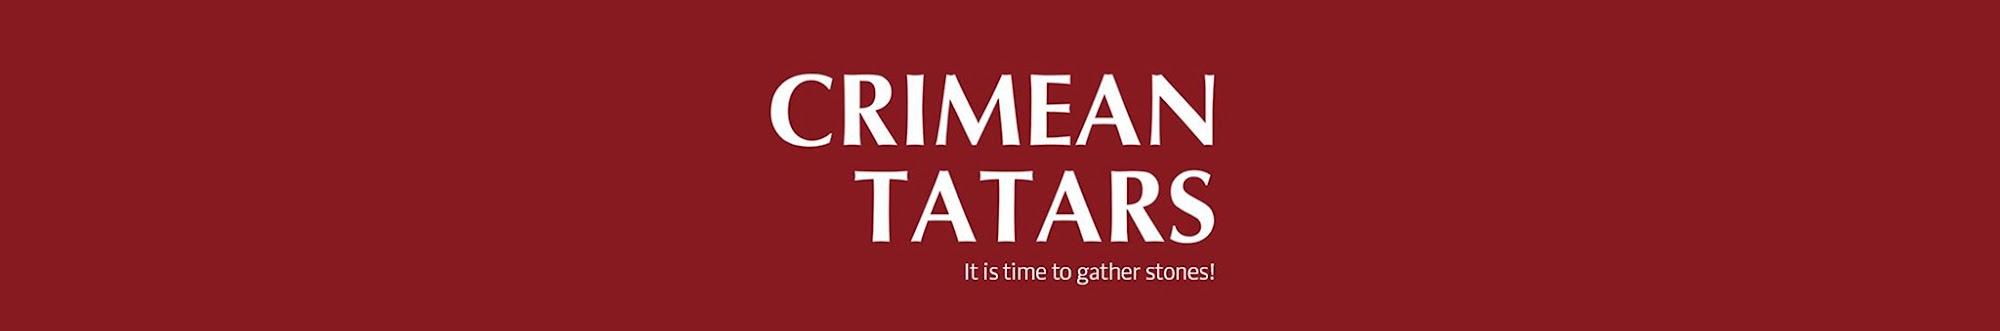 Crimean Tatars in English